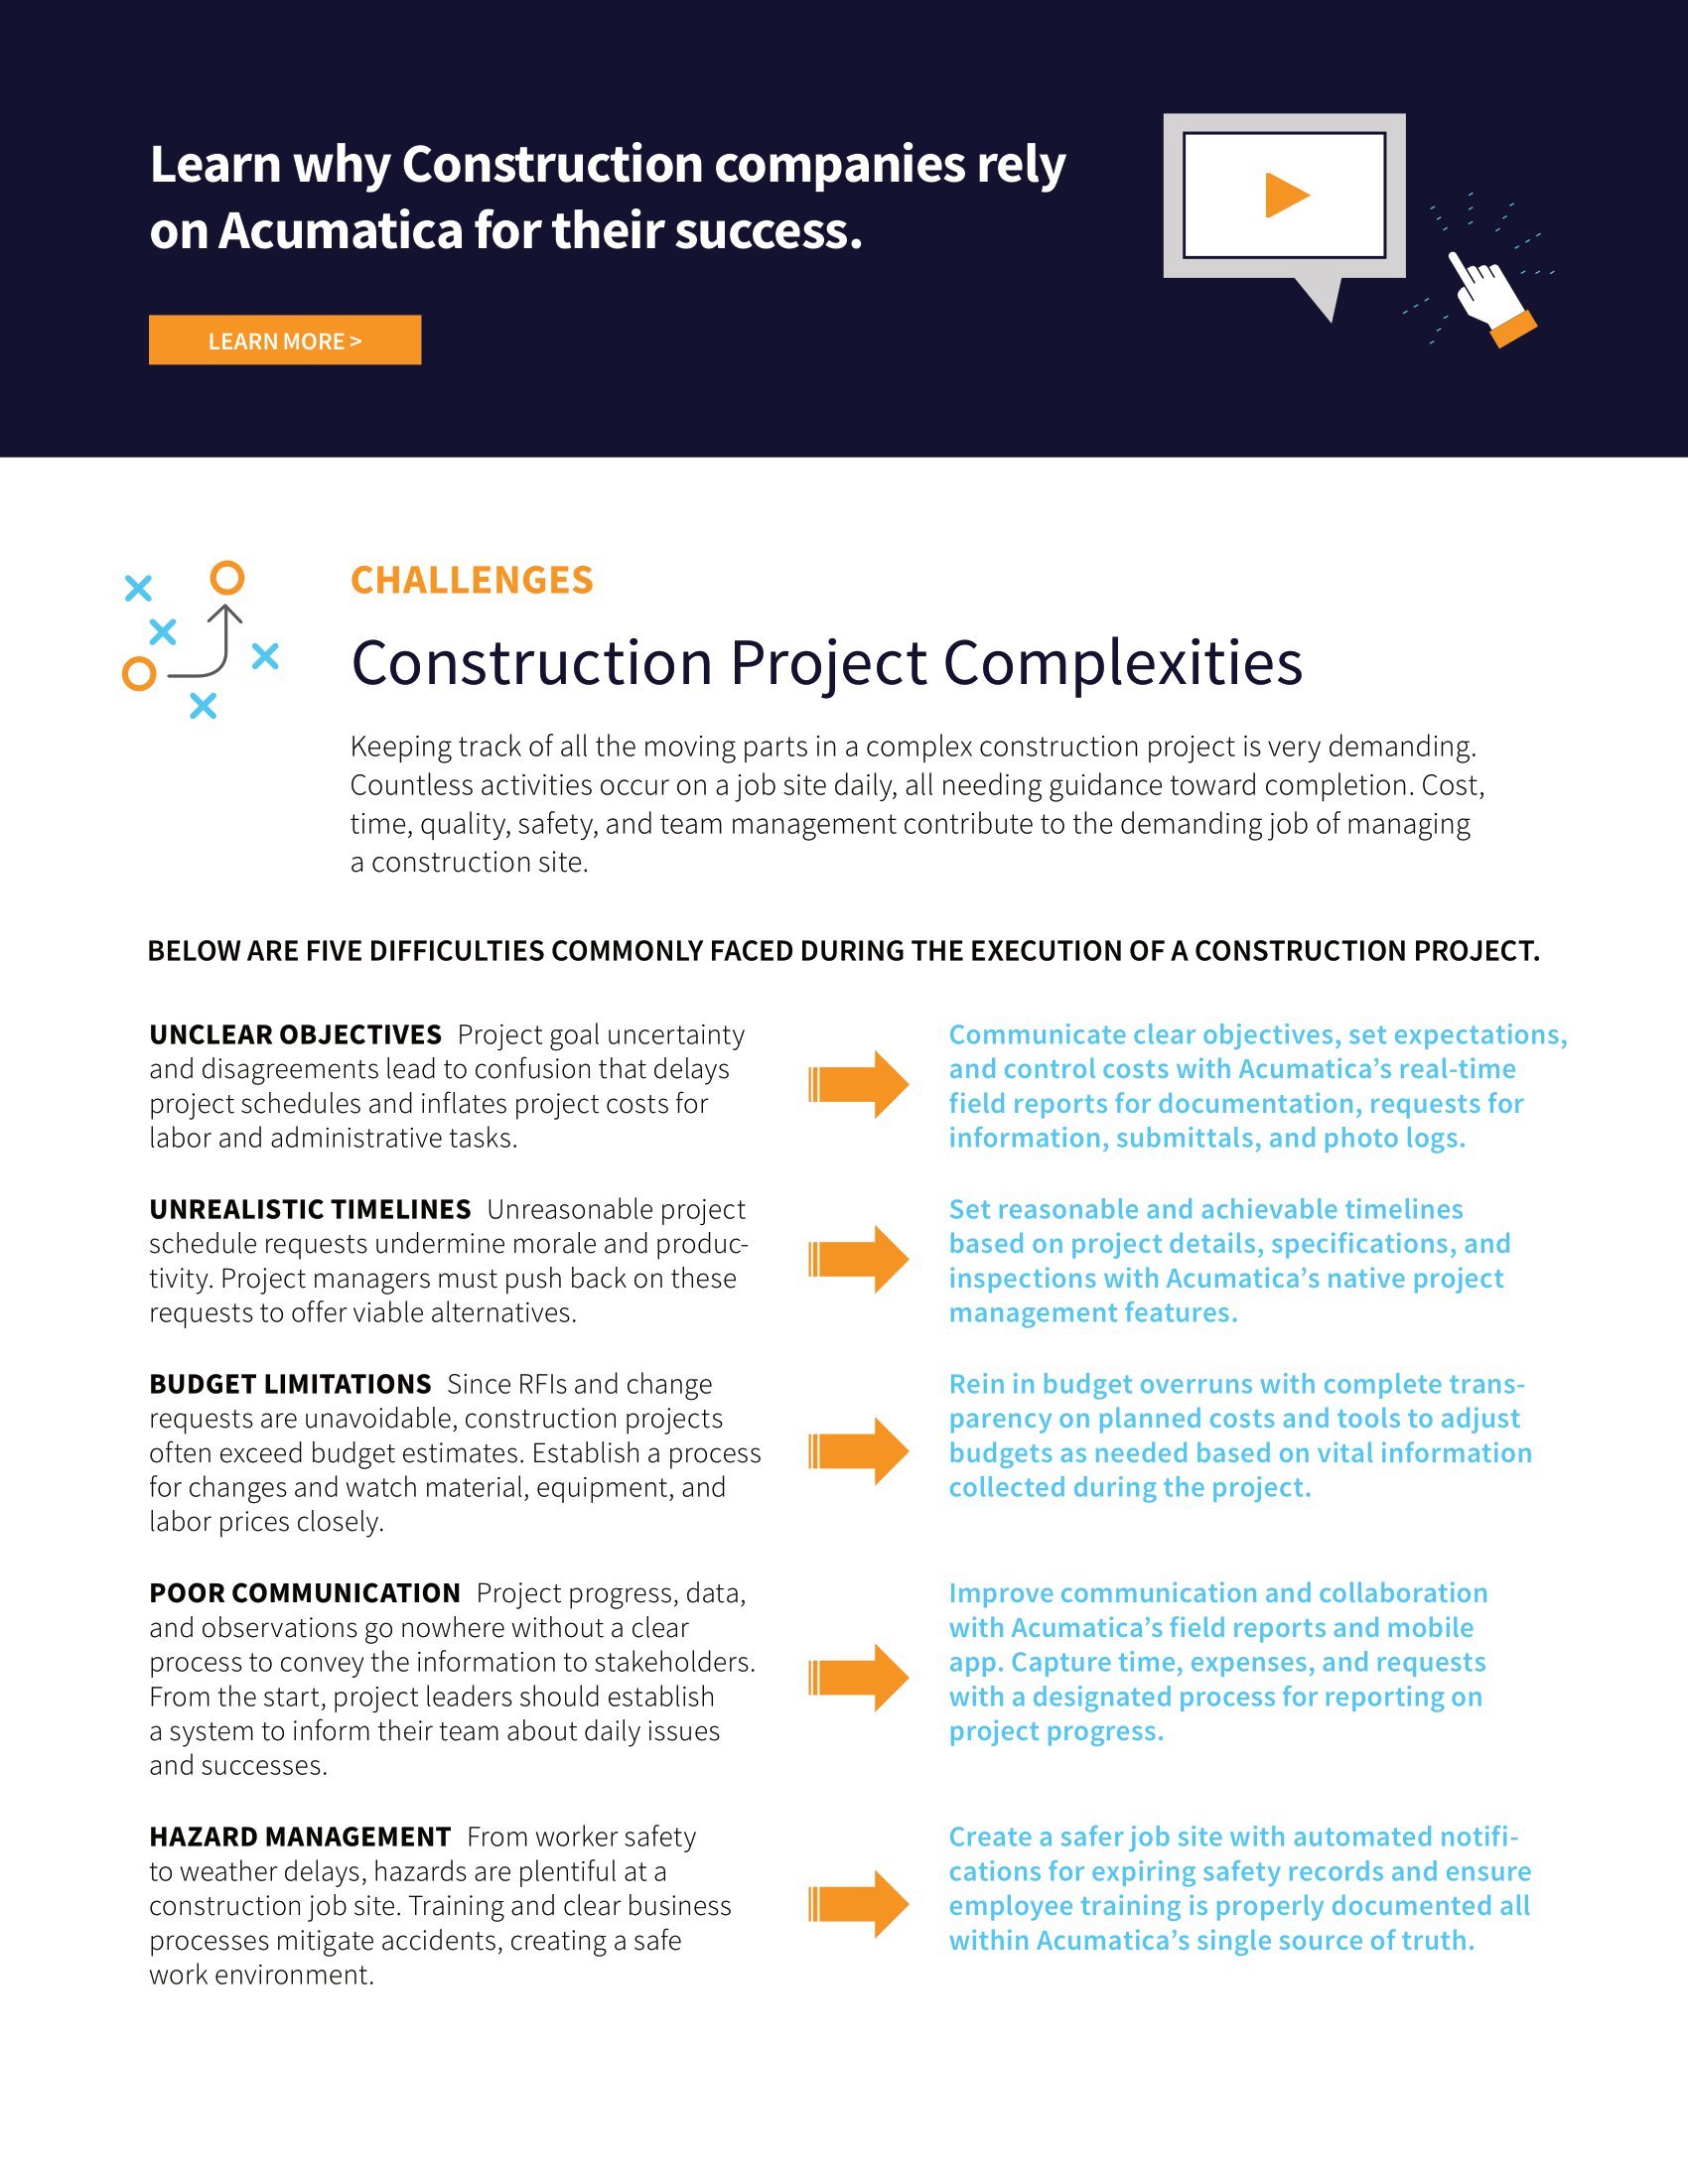 ¿Qué necesitan los gestores de proyectos de construcción para tener éxito? Un sistema centralizado y ampliable. página 1